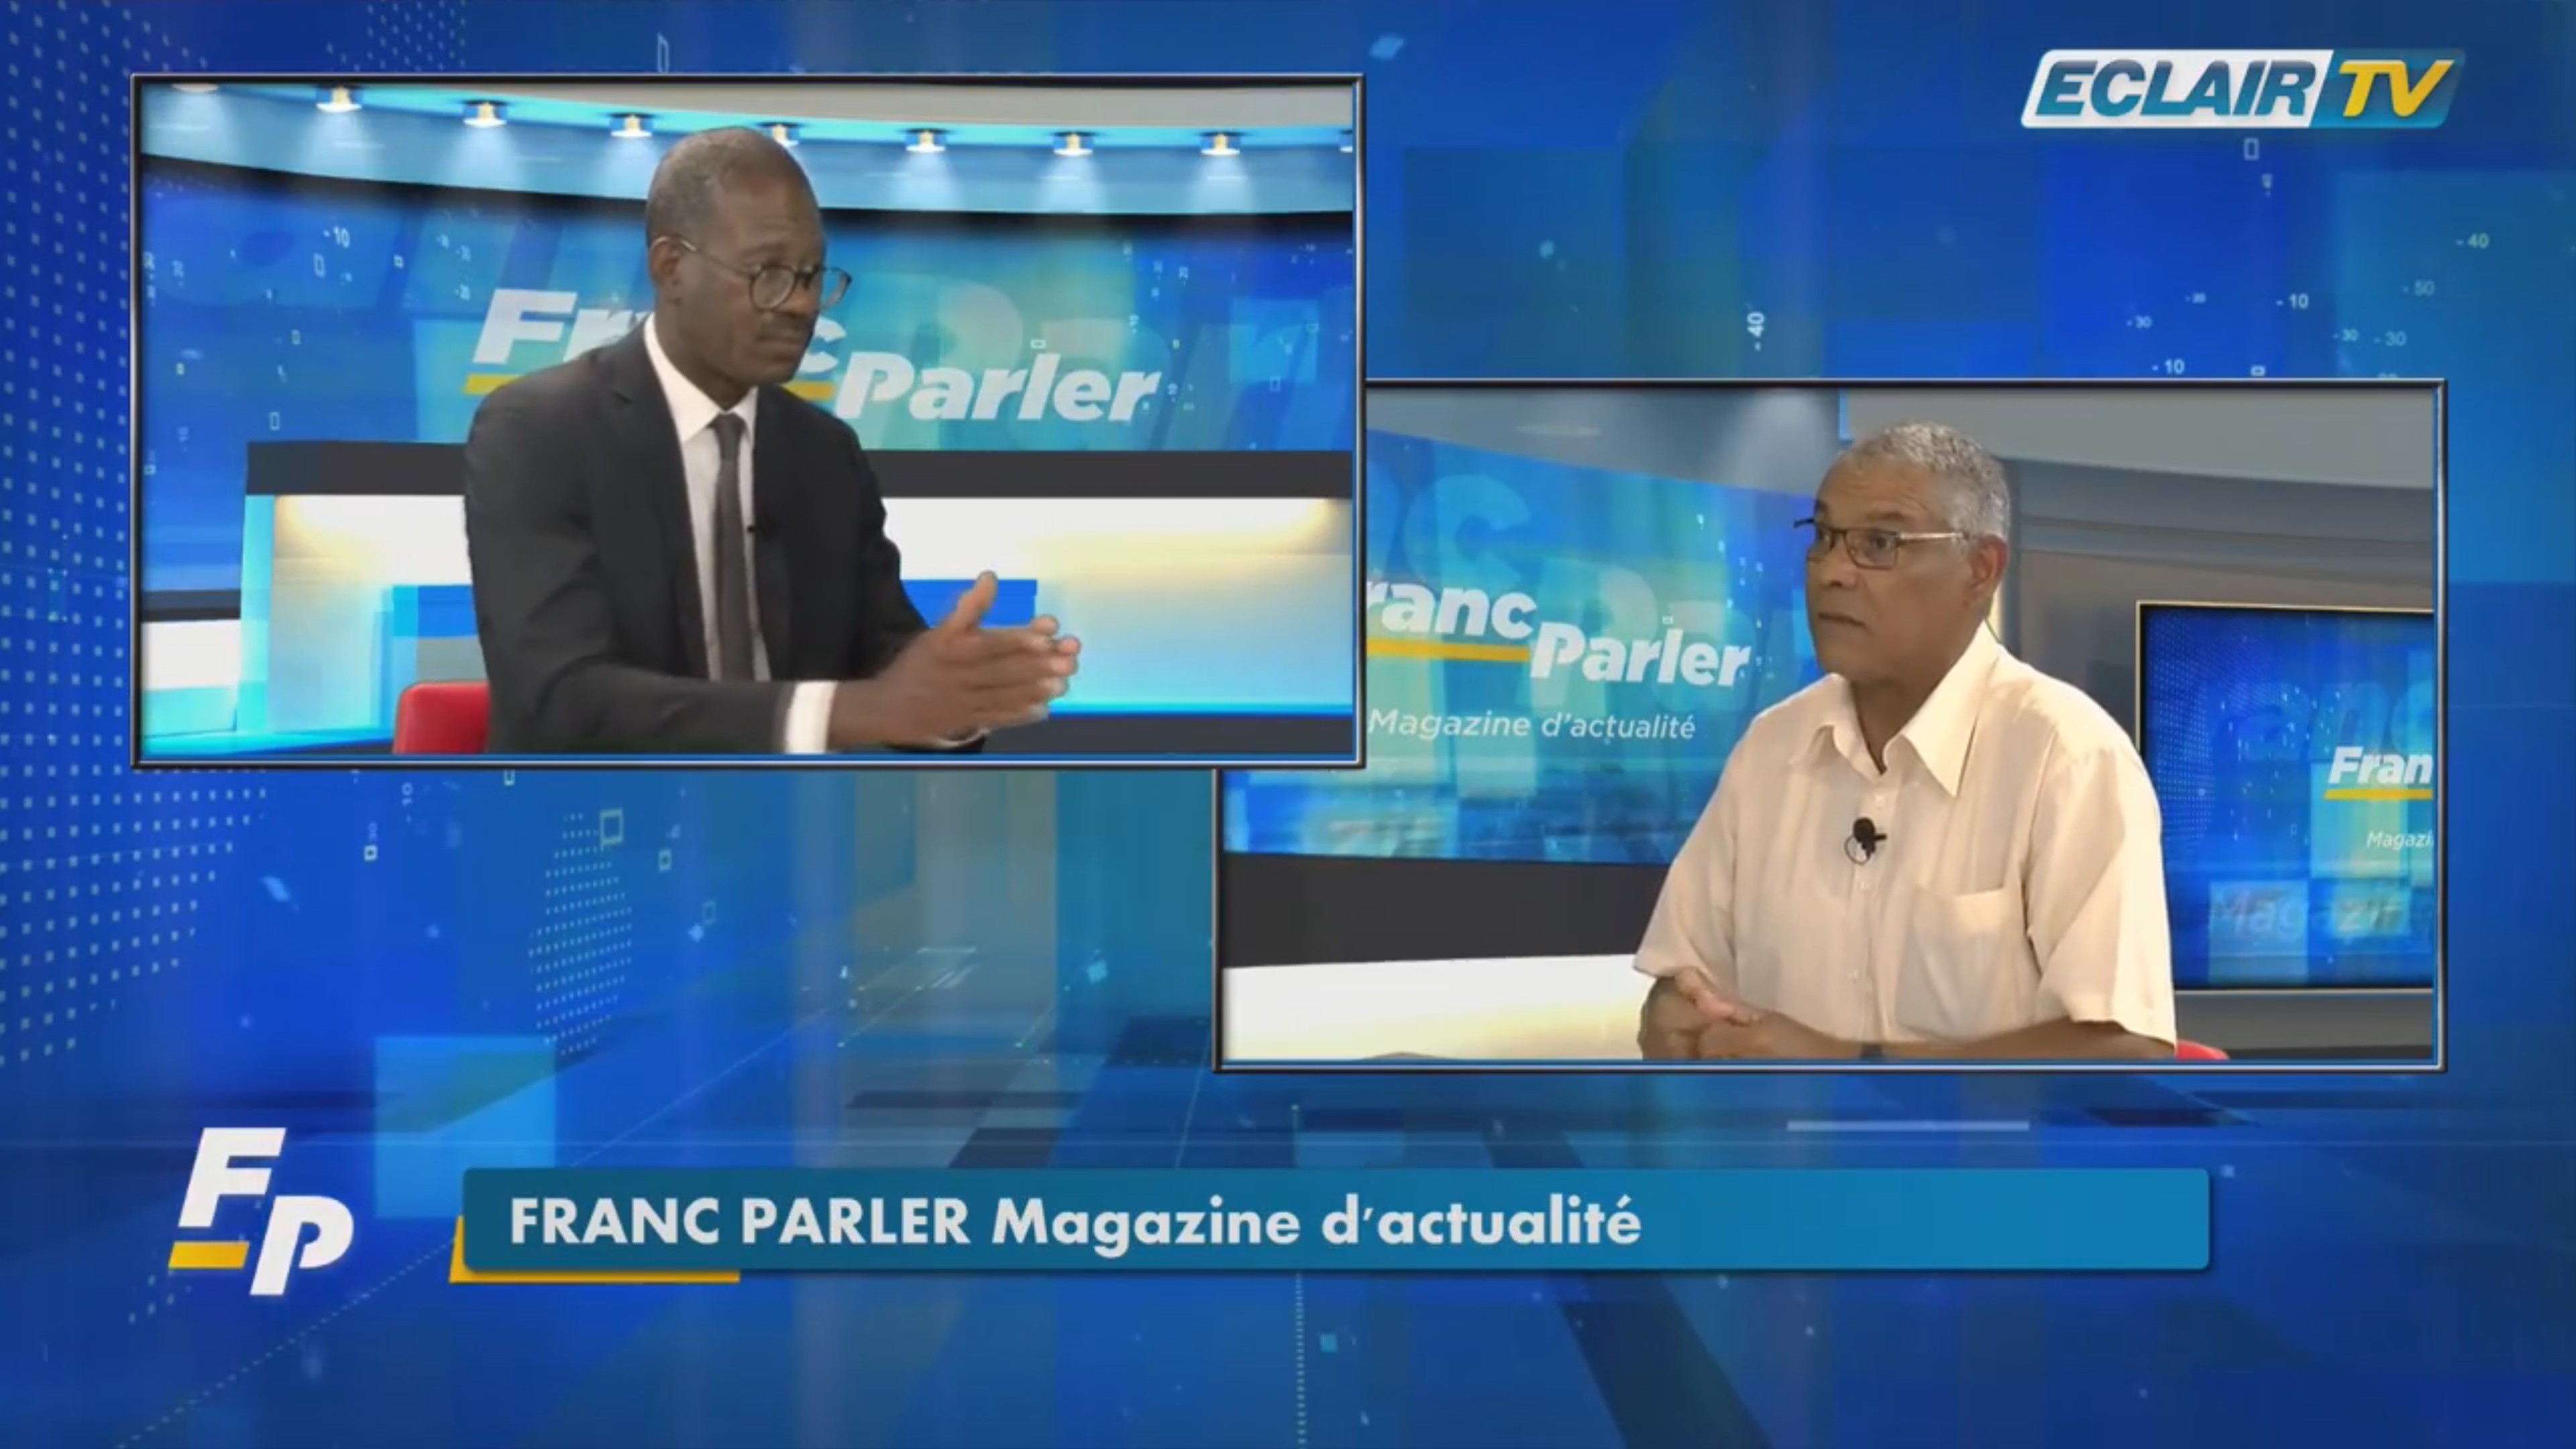 [Vidéo] Onews Guadeloupe Franc Parler avec Georges CALIXTE Politologue suite à la présidentielle (Eclair TV)